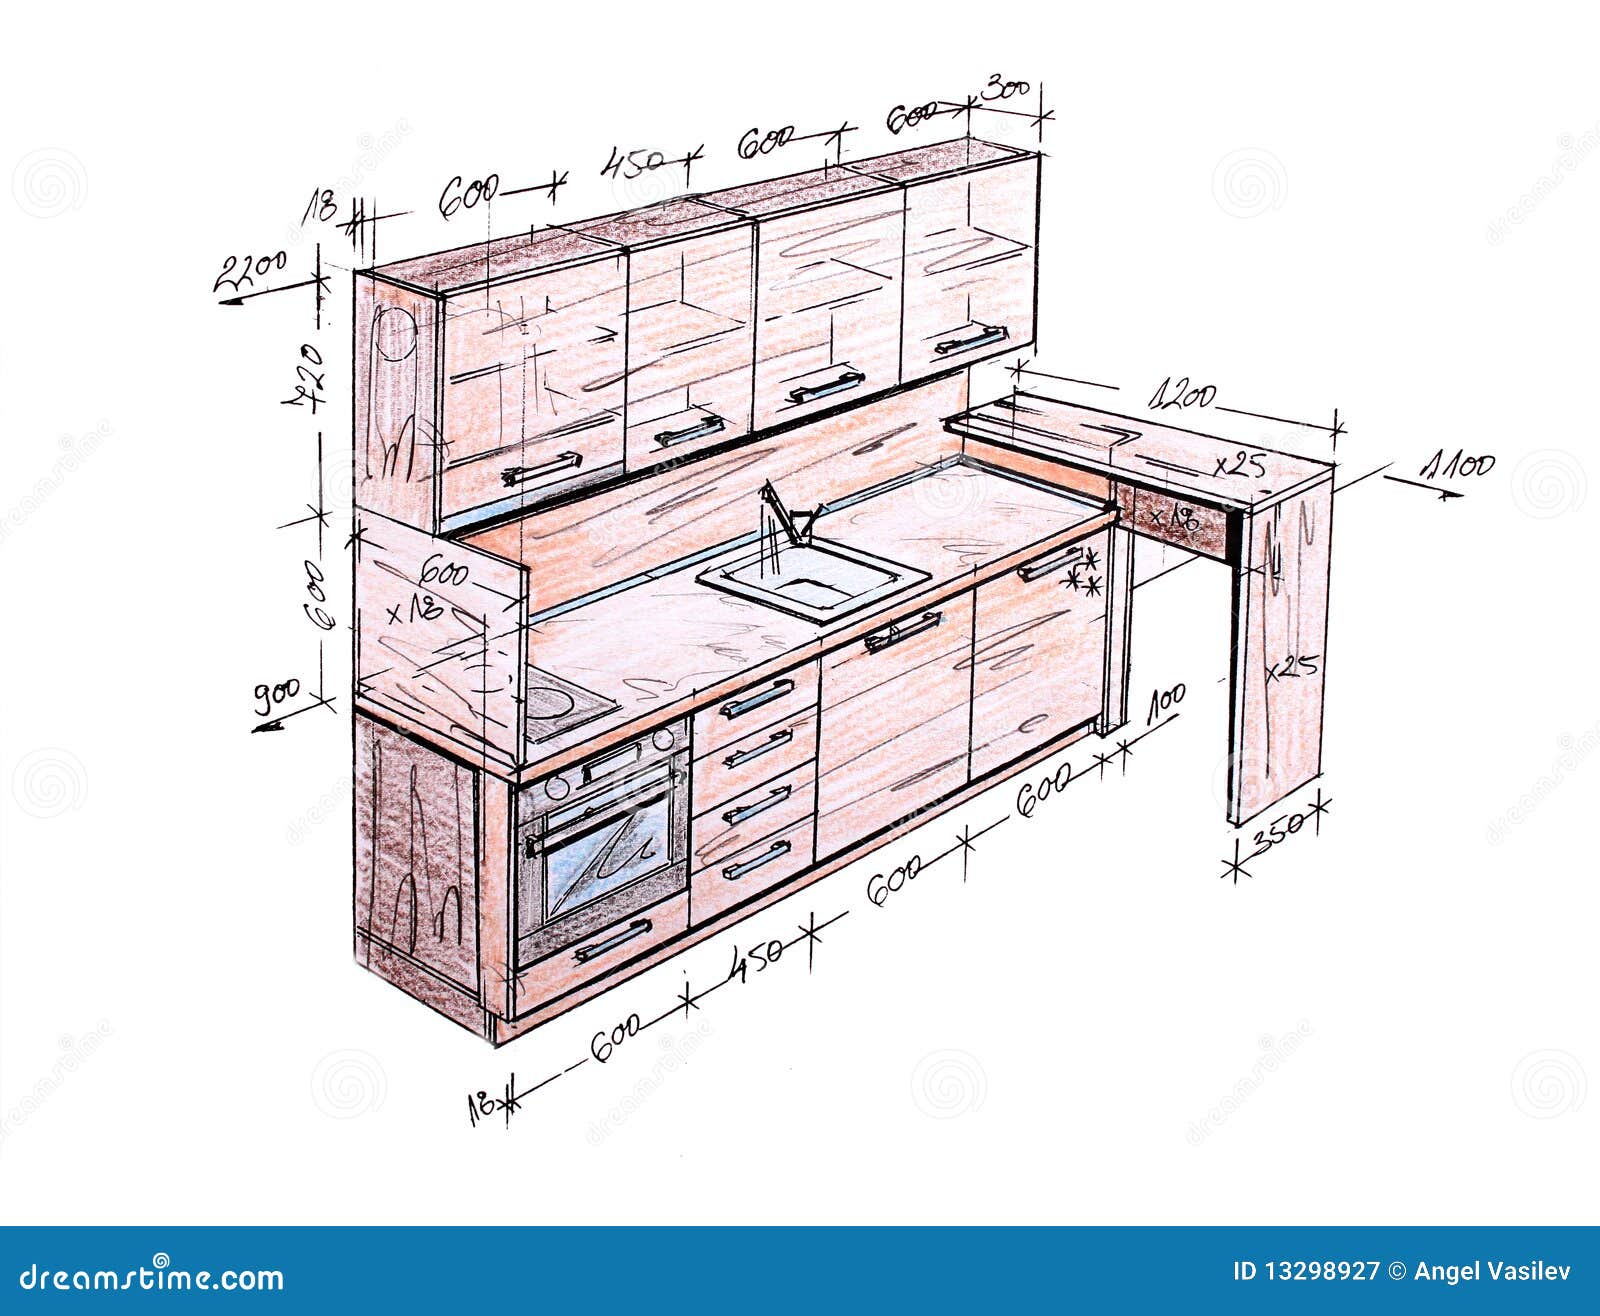 Furniture Design Drawings  Home Hd Wallpaper Furniture Design  